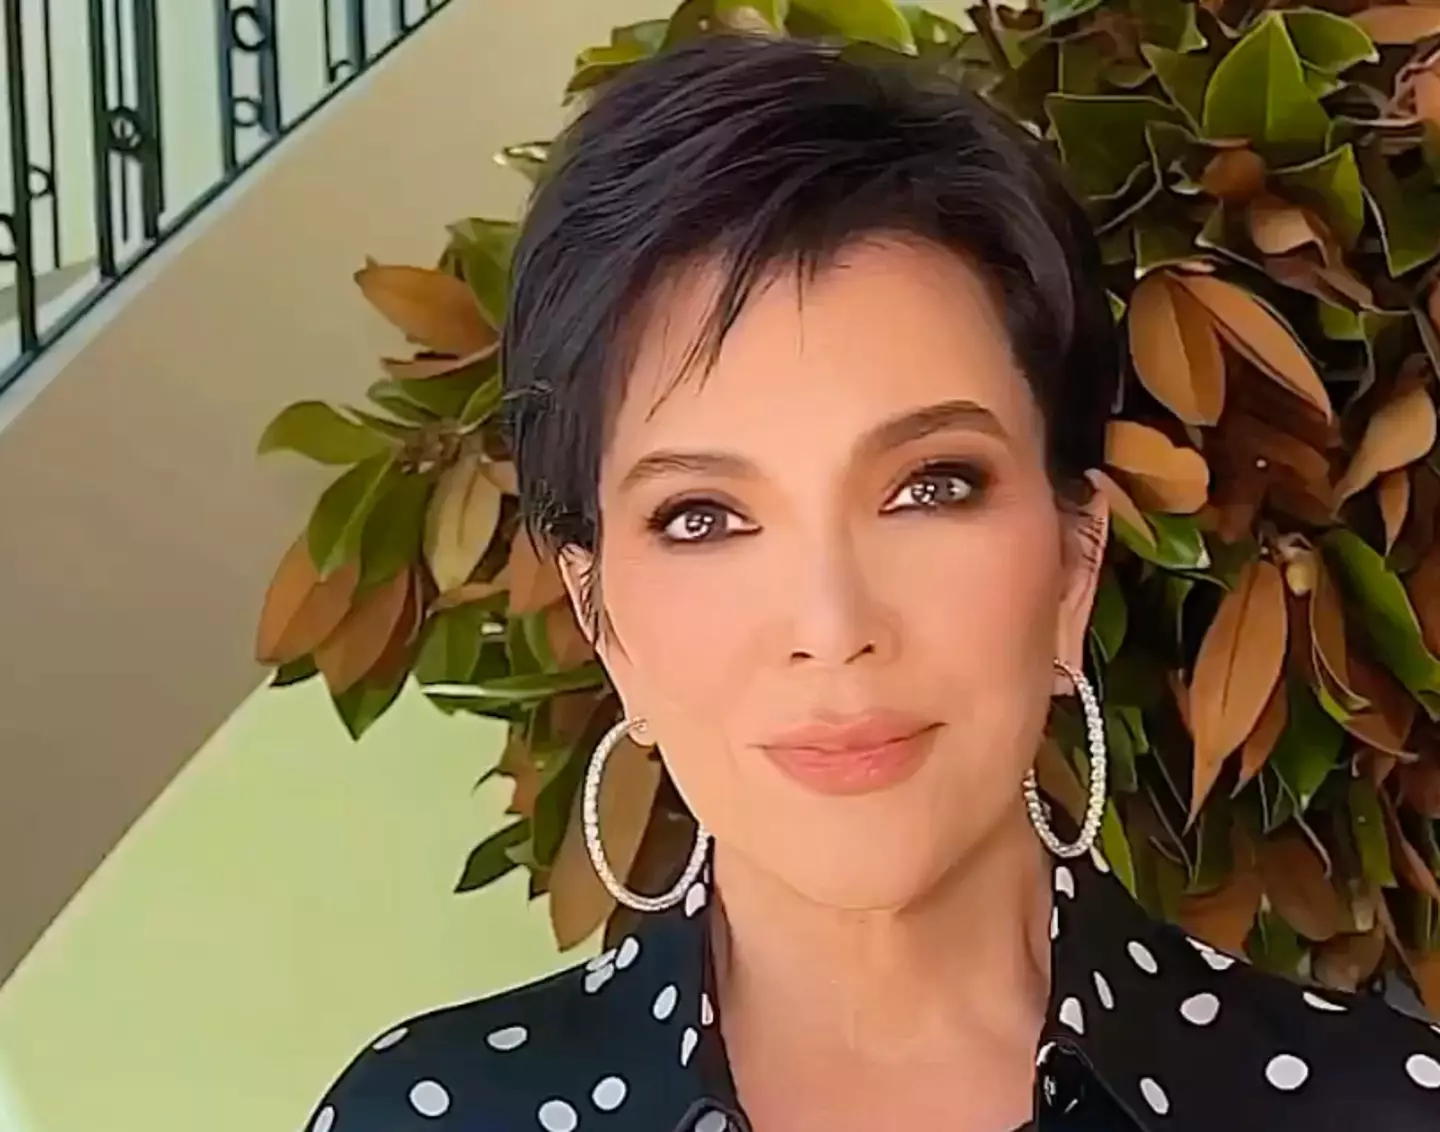 Kris Jenner shared her love for her makeup artist on her Instagram Story.